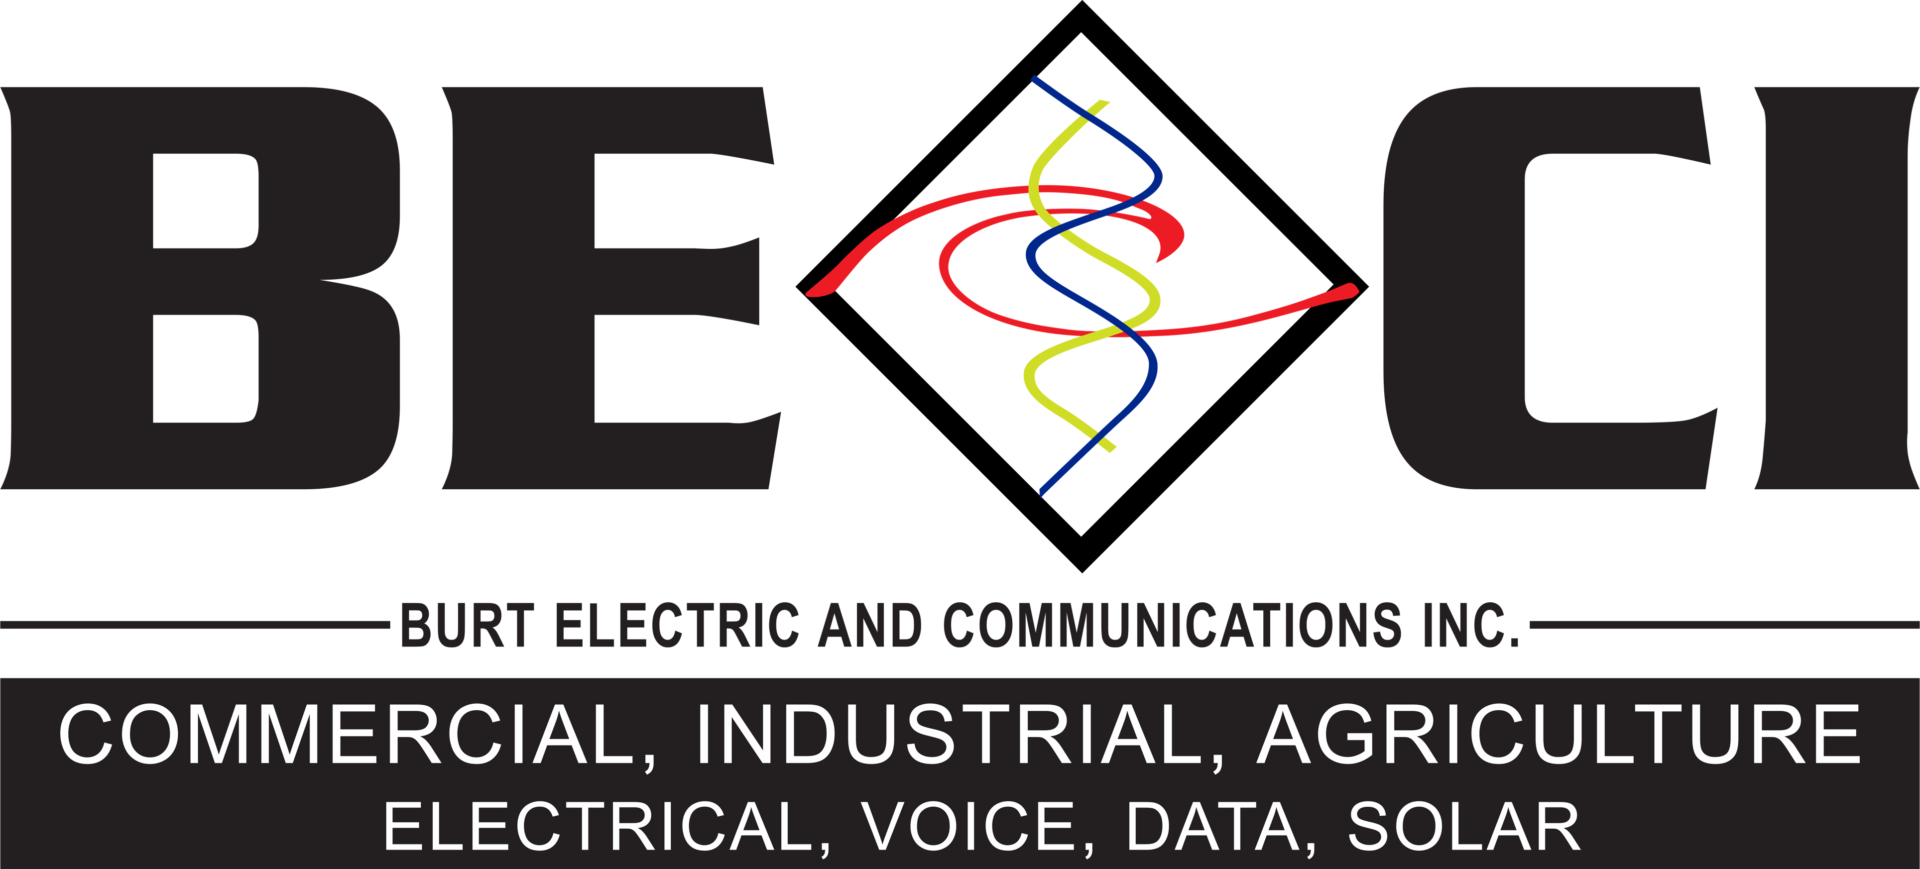 Burt Electric & Communications, Inc.